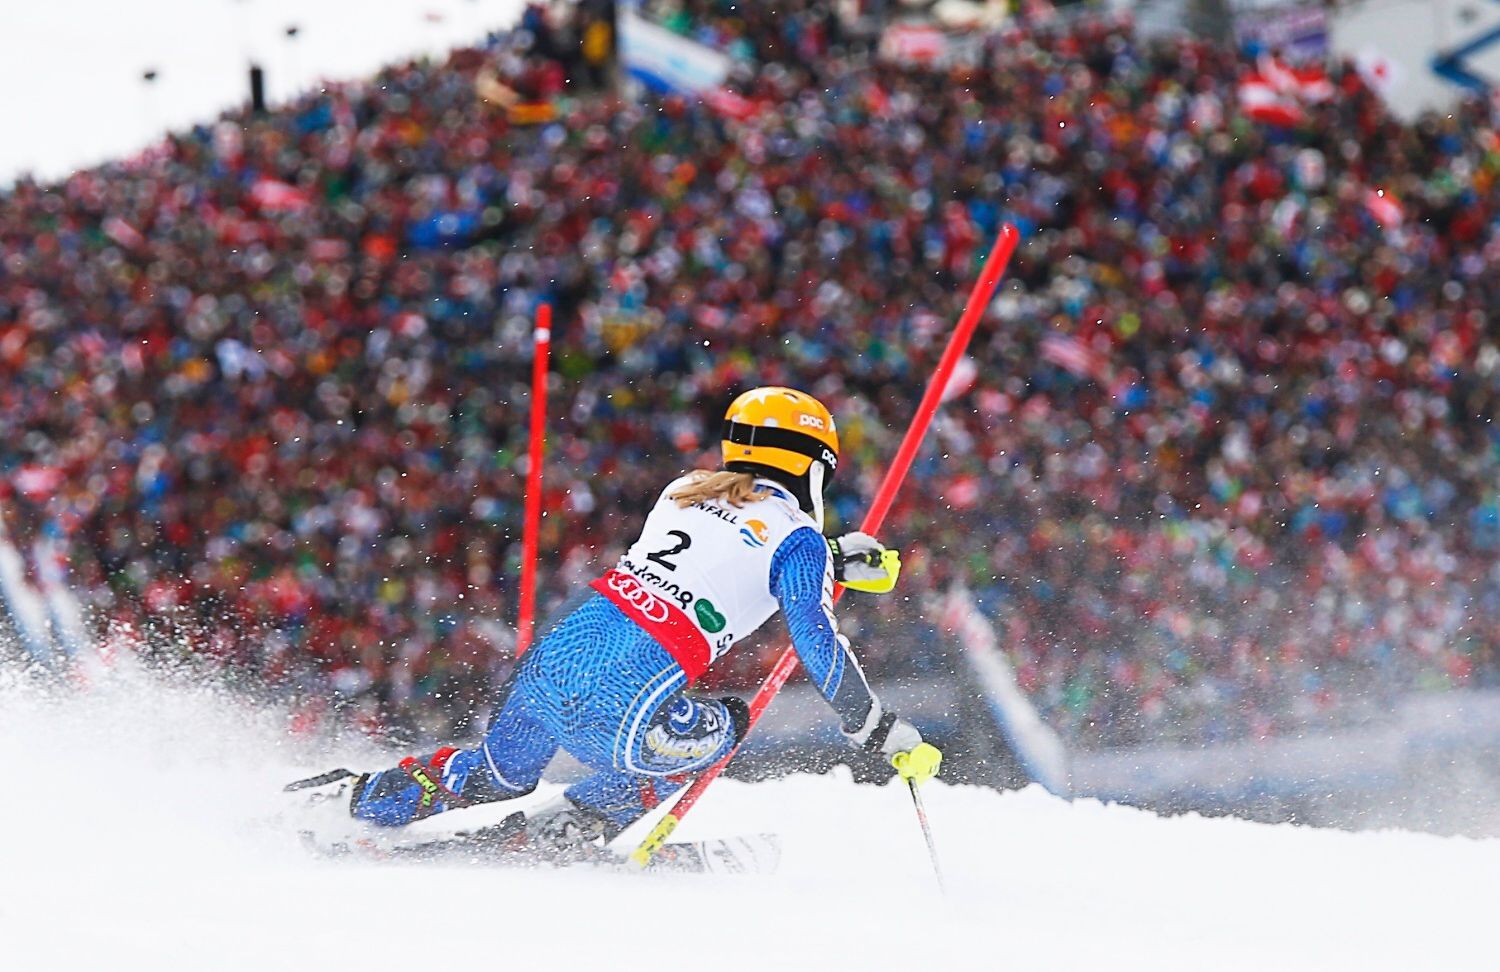 MS ve sjezodvém lyžování 2013, slalom: Frida Hansdotterová